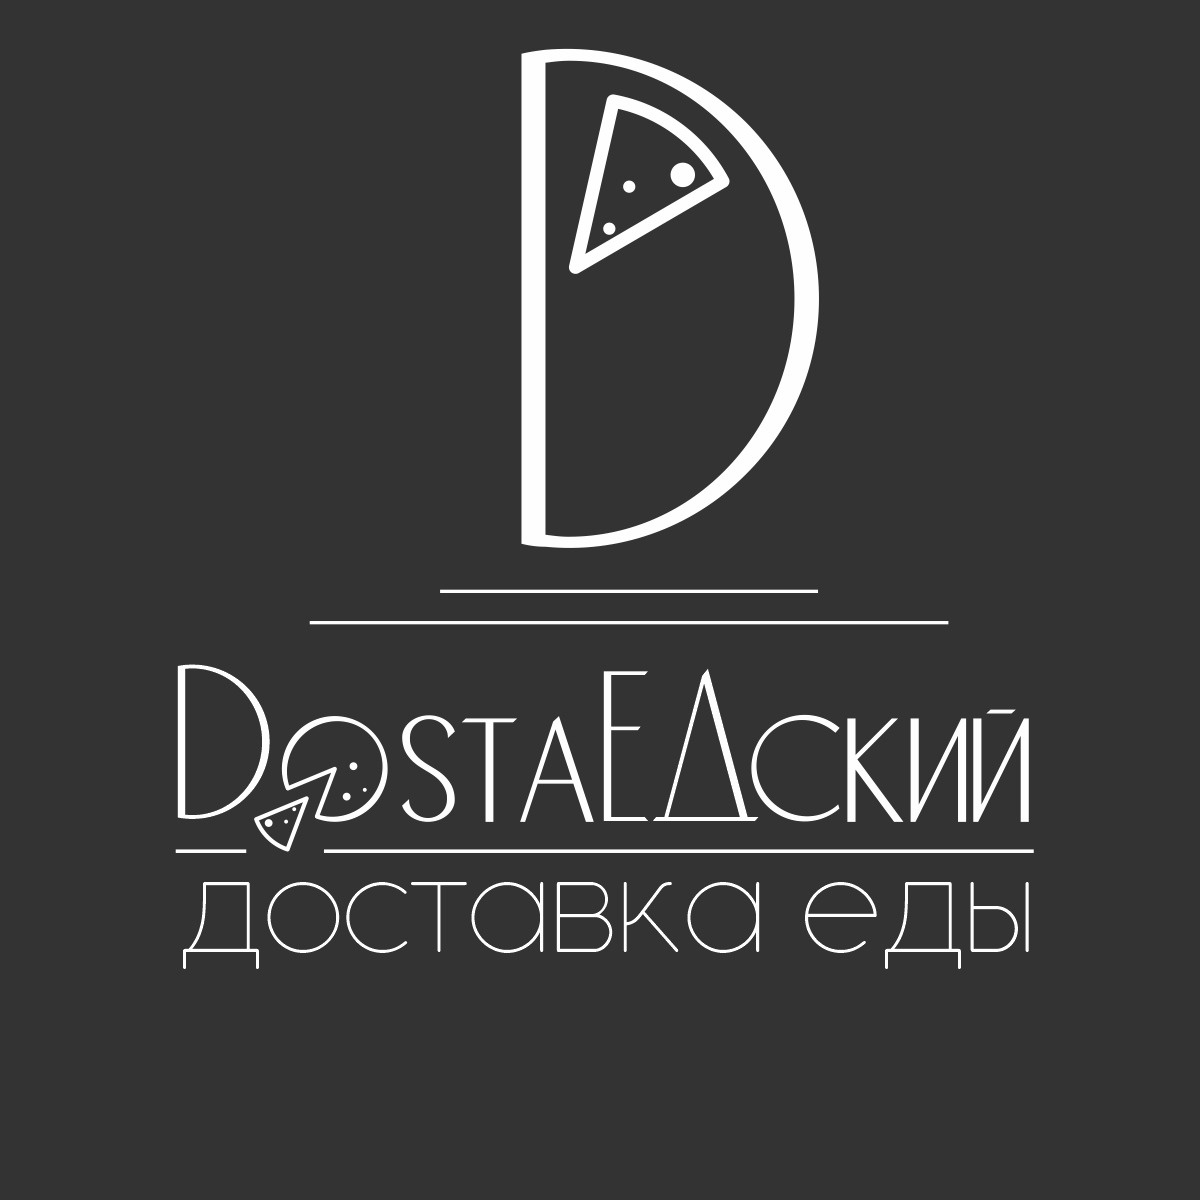 Dostaedsky